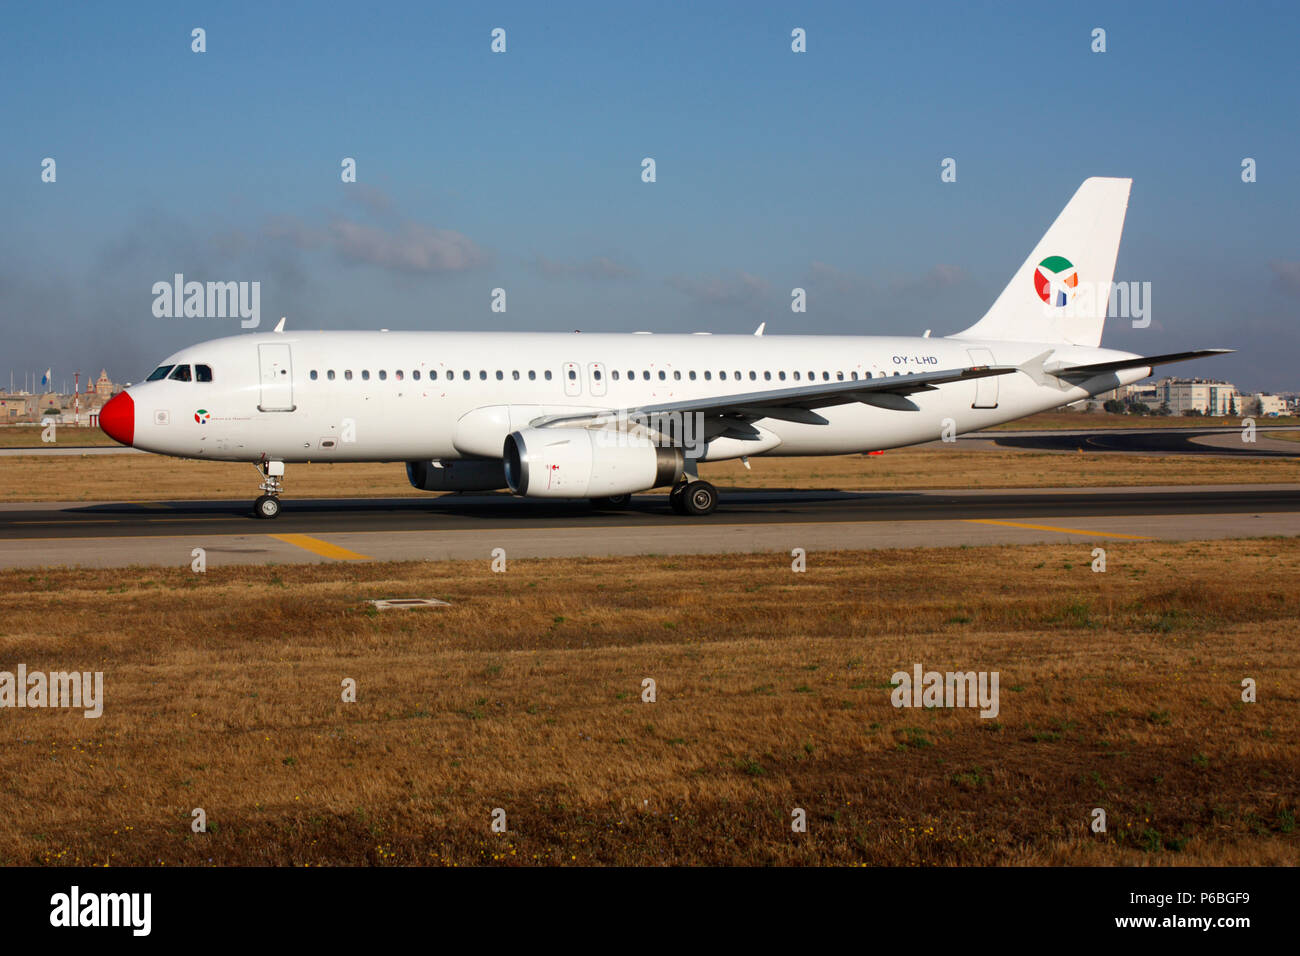 Transporte aéreo danés Airbus A320 de un avión de pasajeros de rodadura para salida de Malta. La aviación civil y transporte aéreo. Foto de stock